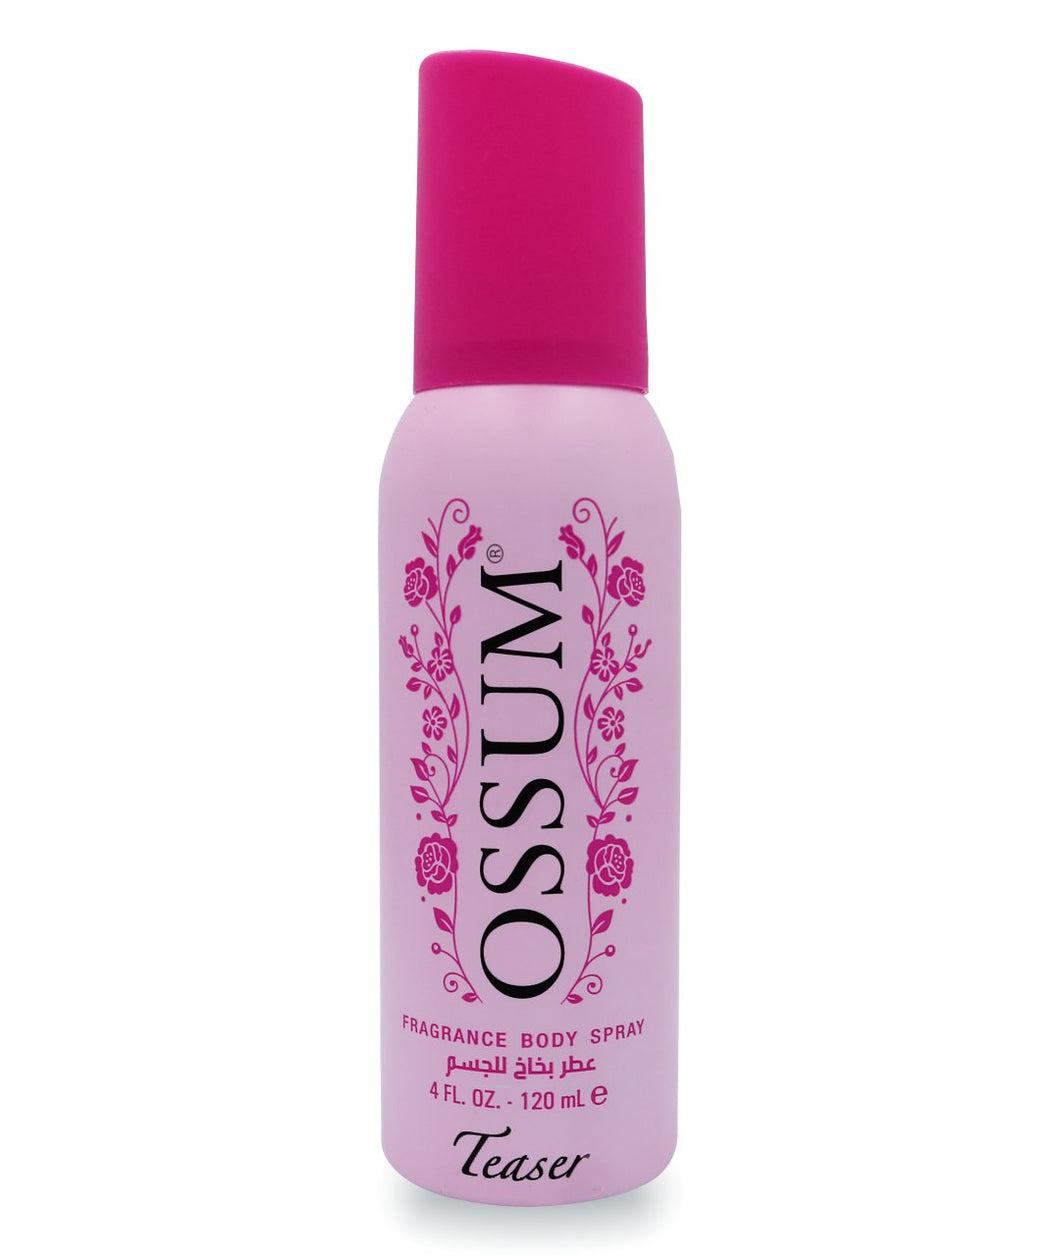 OSSUM Fragrance Body Spray 120 ml - Teaser